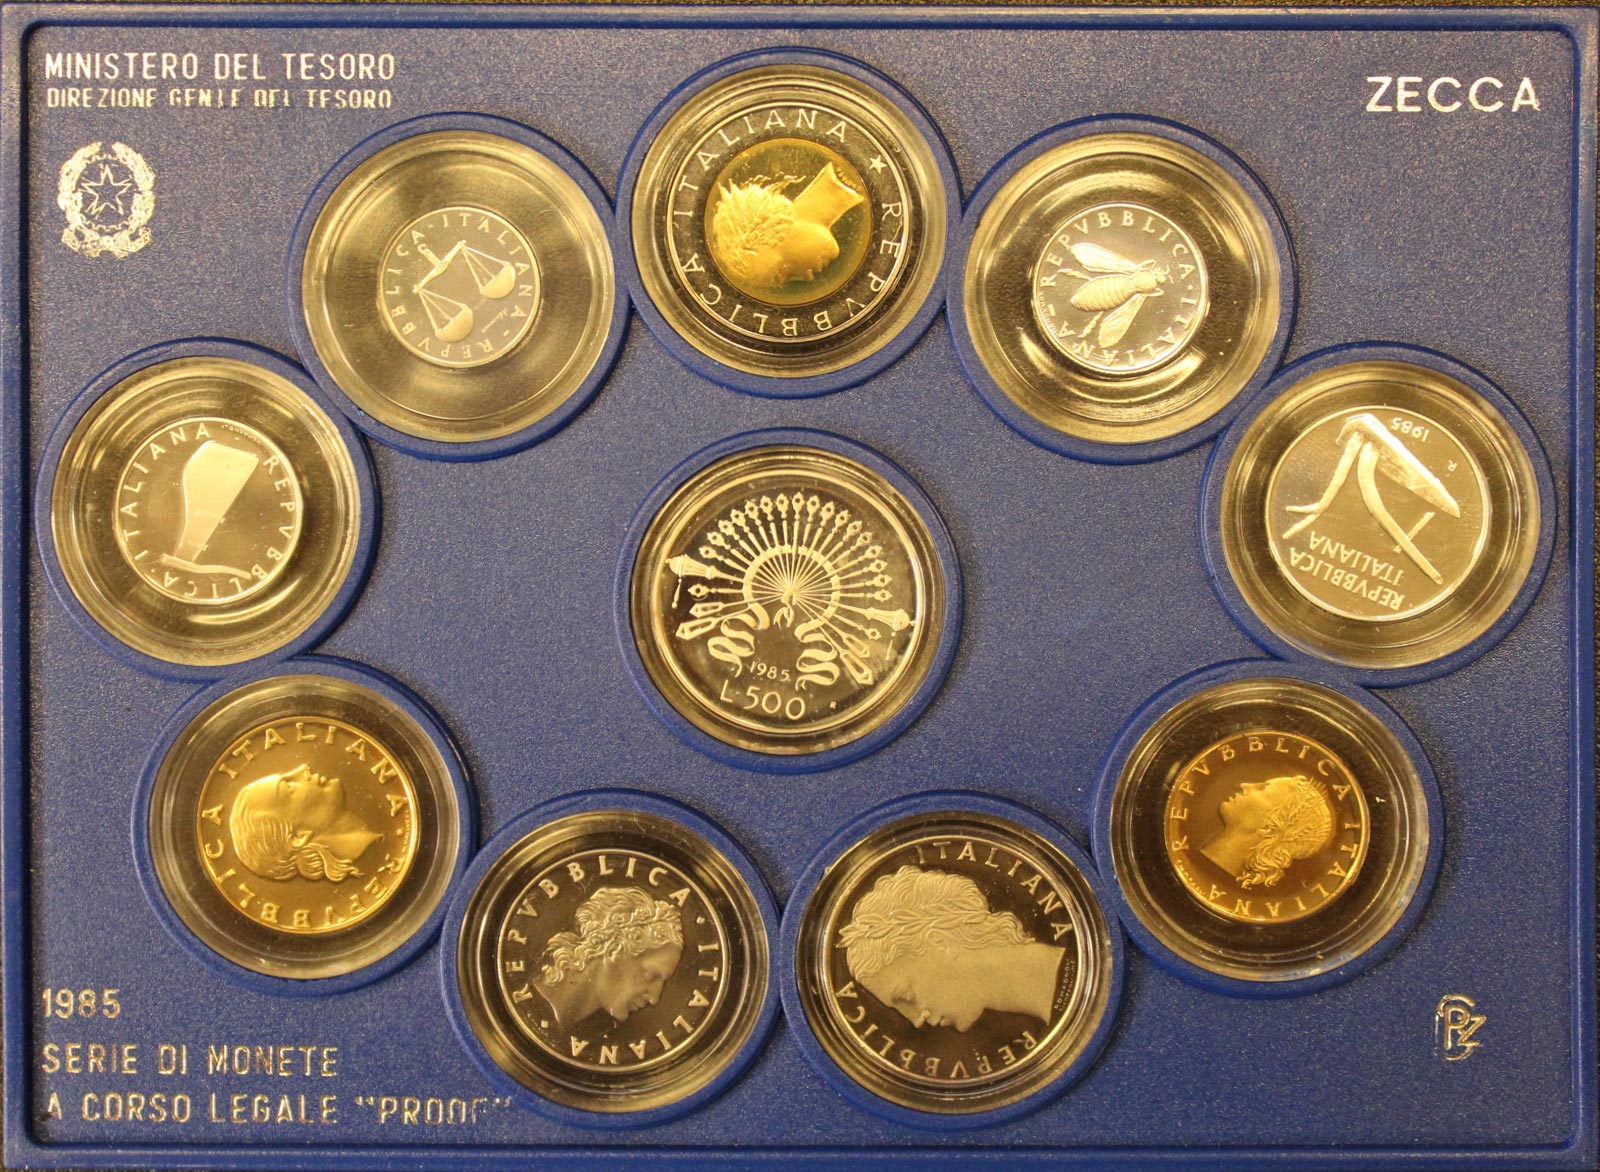 Serie completa di 10 monete confezionate con L.500 "Manzoni"